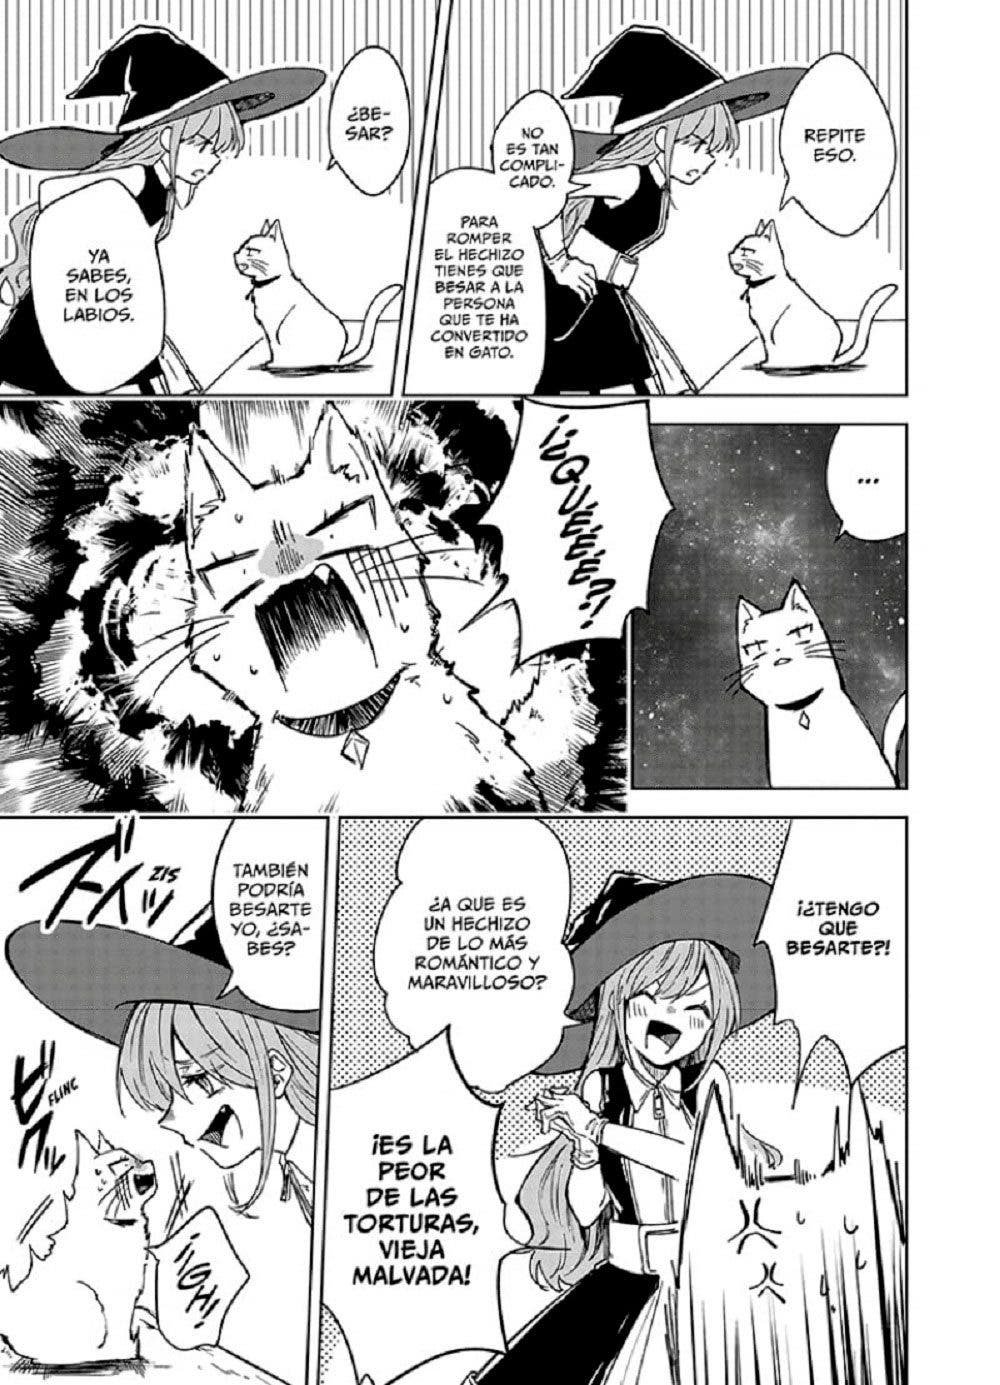 Meg y Lilith en el manga yuri